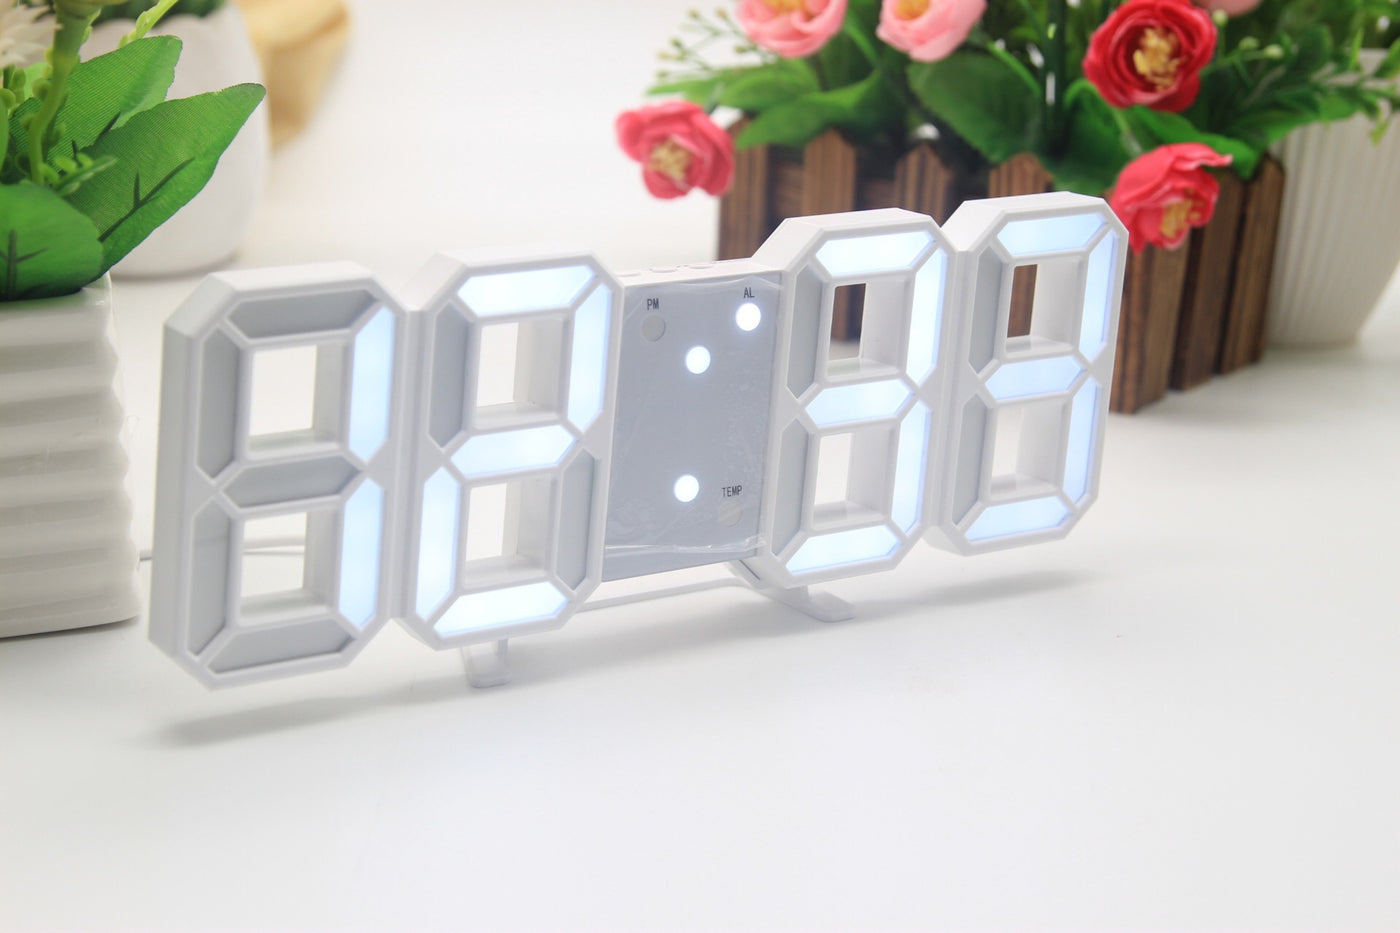 3D LED Digital Alarm Clock